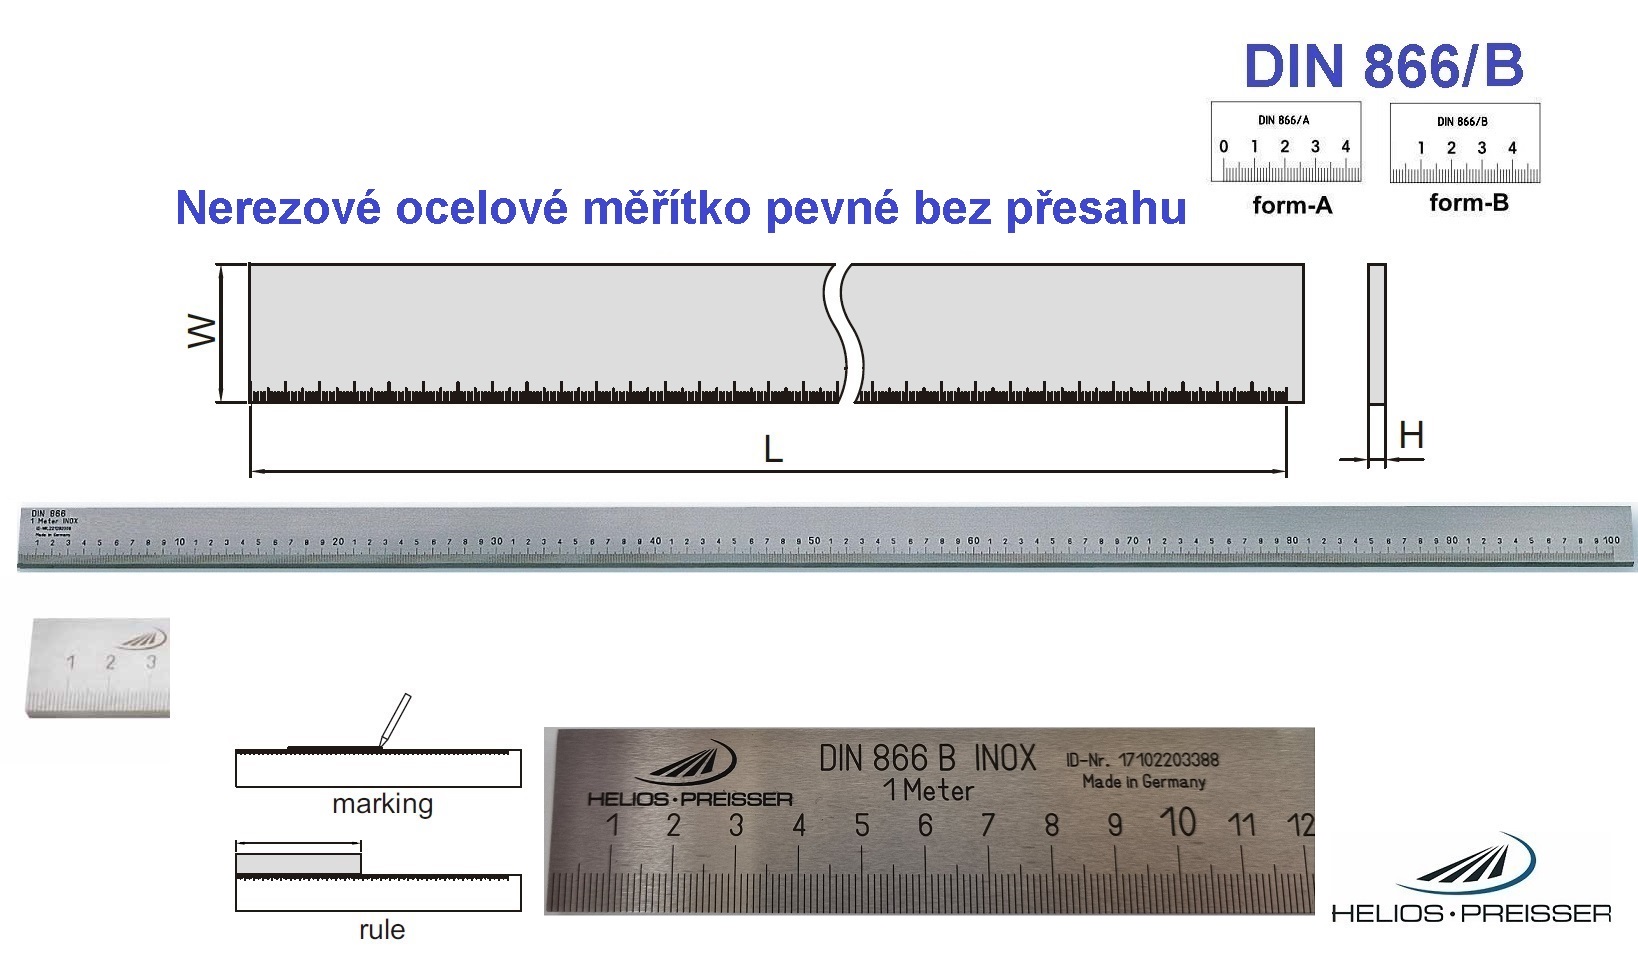 Nerezové ocelové měřítko pevné bez přesahu 4000 /50x10 mm, DIN 866/B, Helios-Preisser